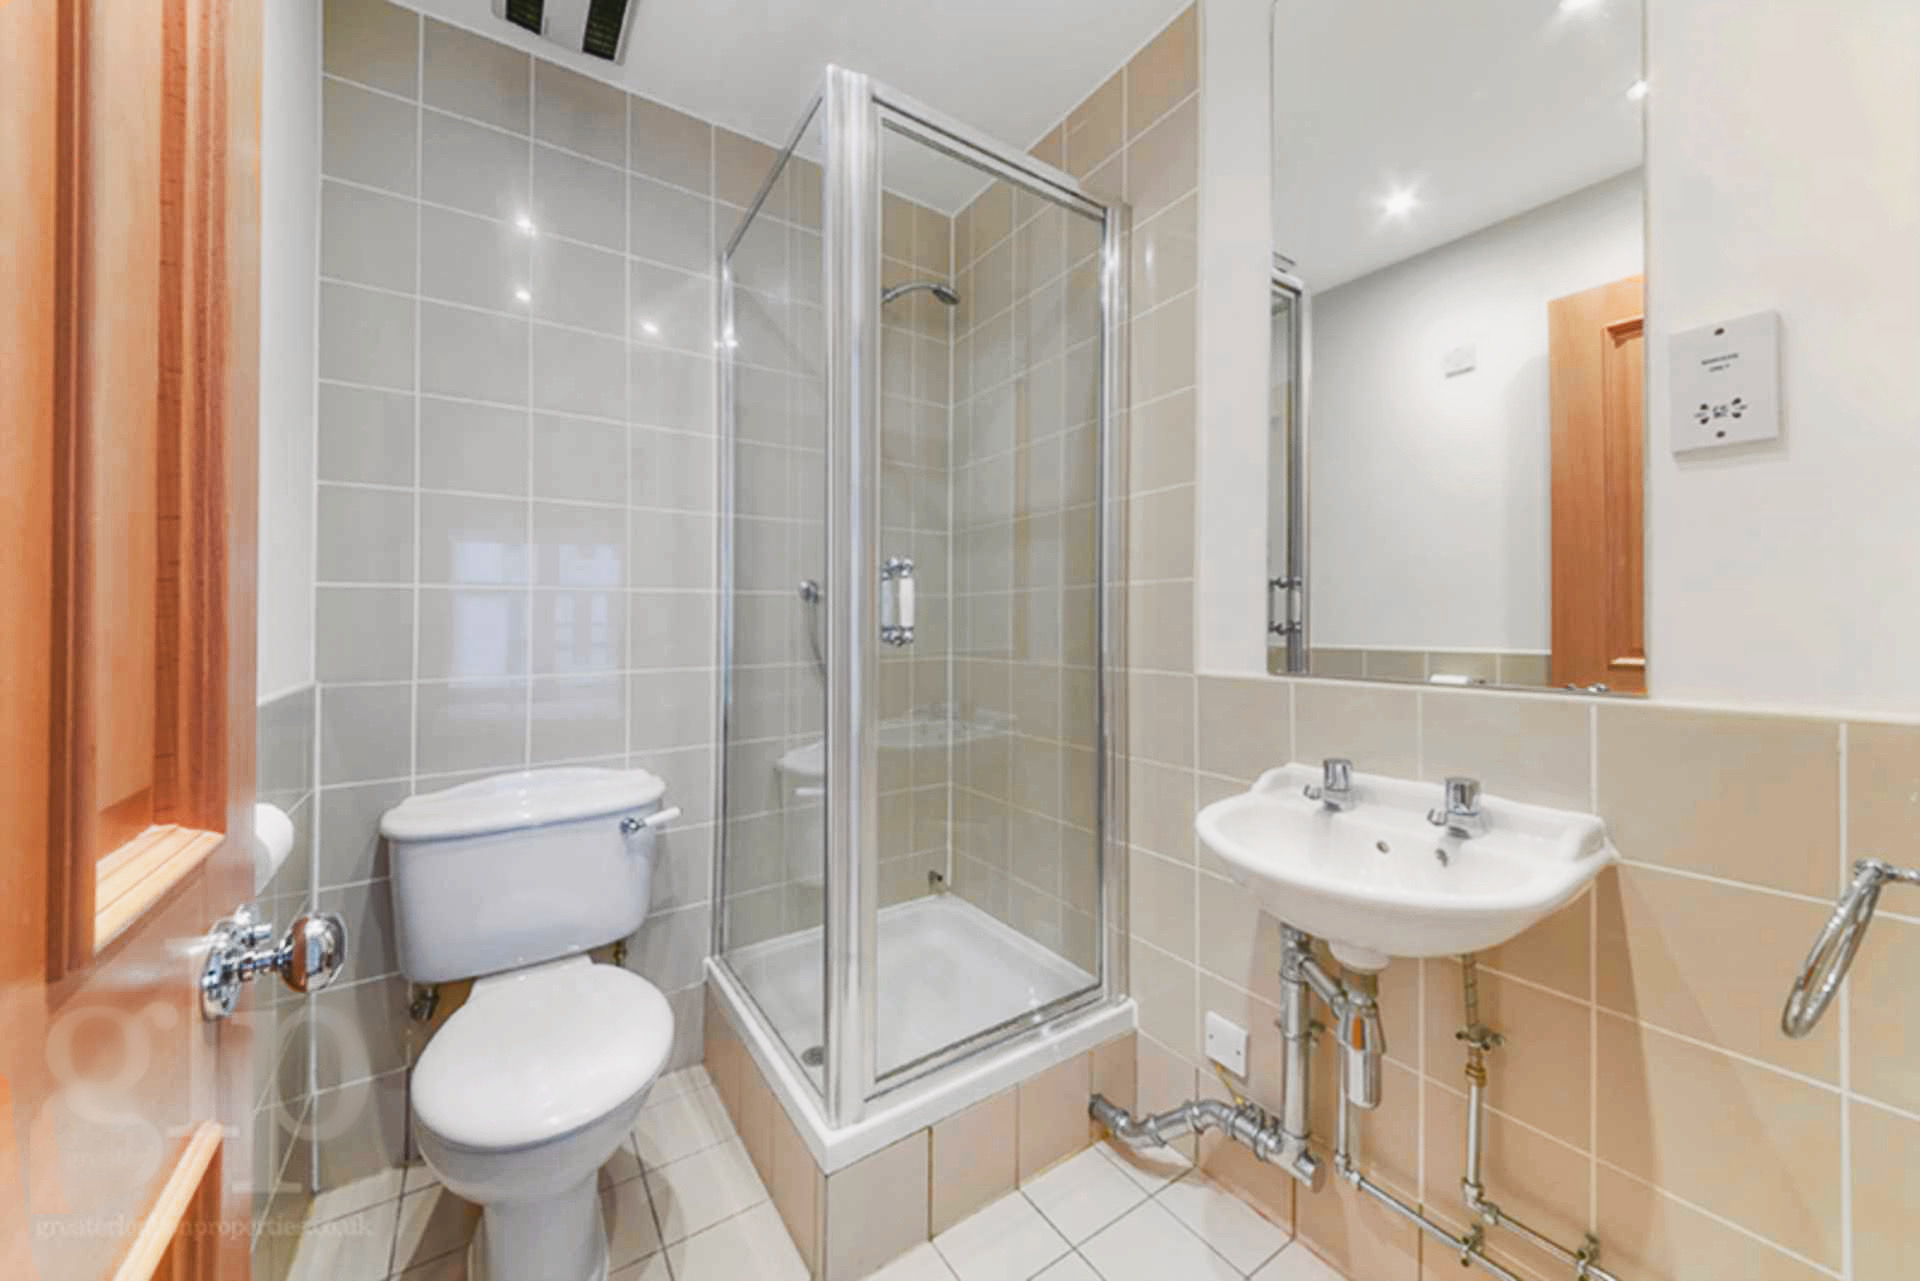 Lovelydays luxury service apartment rental - Soho - Argyll Street Penthouse - Owner - 2 bedrooms - 2 bathrooms - Lovely shower - b73722651591 - Lovelydays